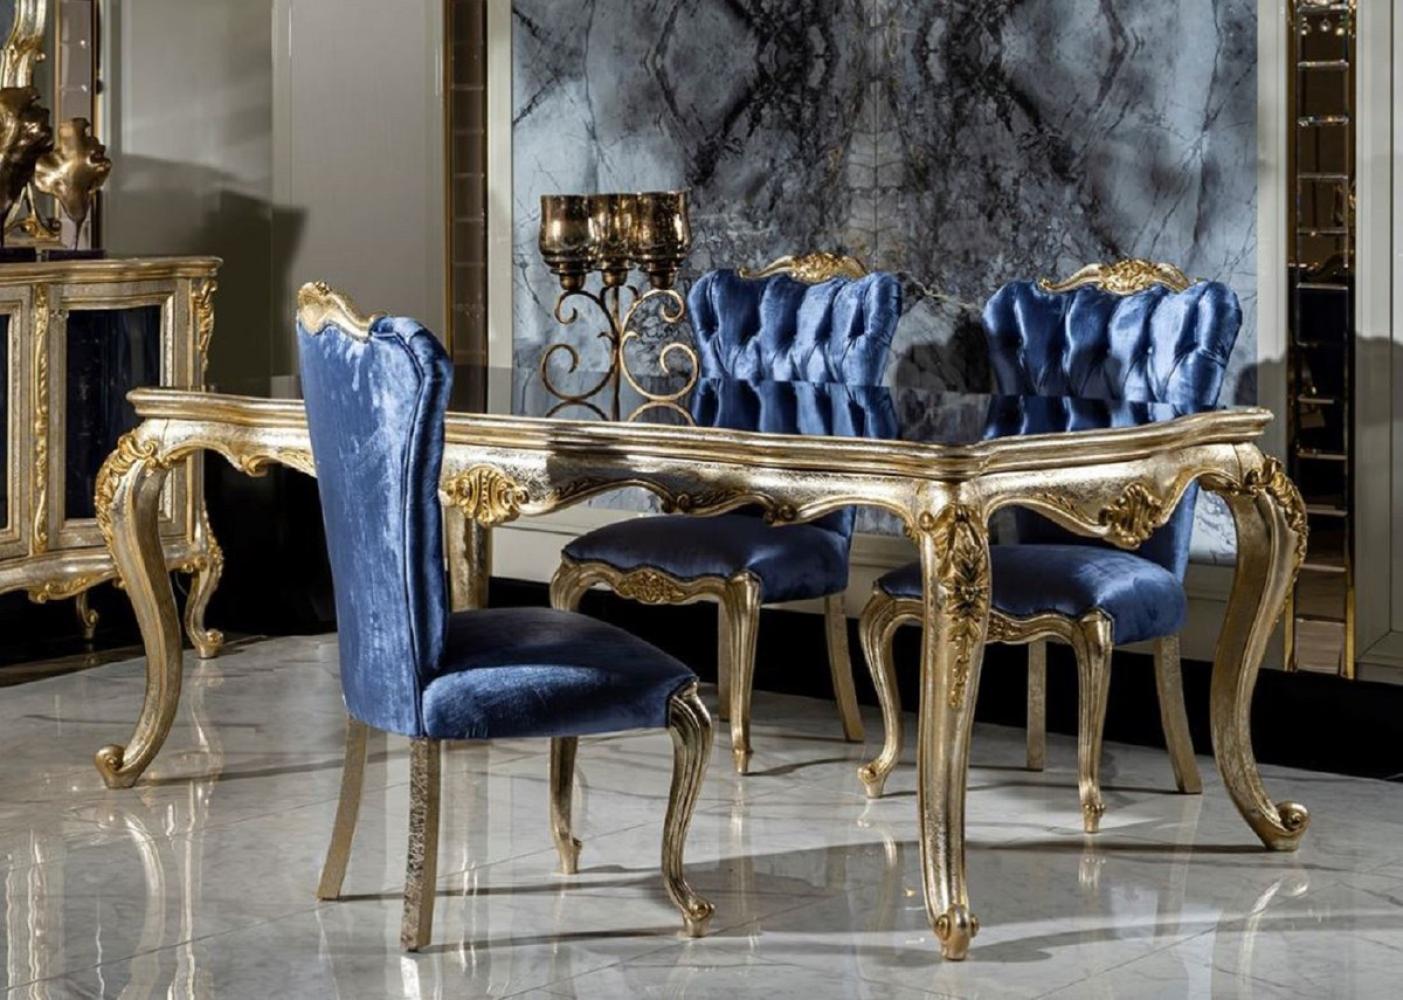 Casa Padrino Luxus Barock Esszimmer Set Blau / Silber / Gold - 1 Esstisch & 6 Esszimmerstühle - Barock Esszimmer Möbel - Edel & Prunkvoll Bild 1